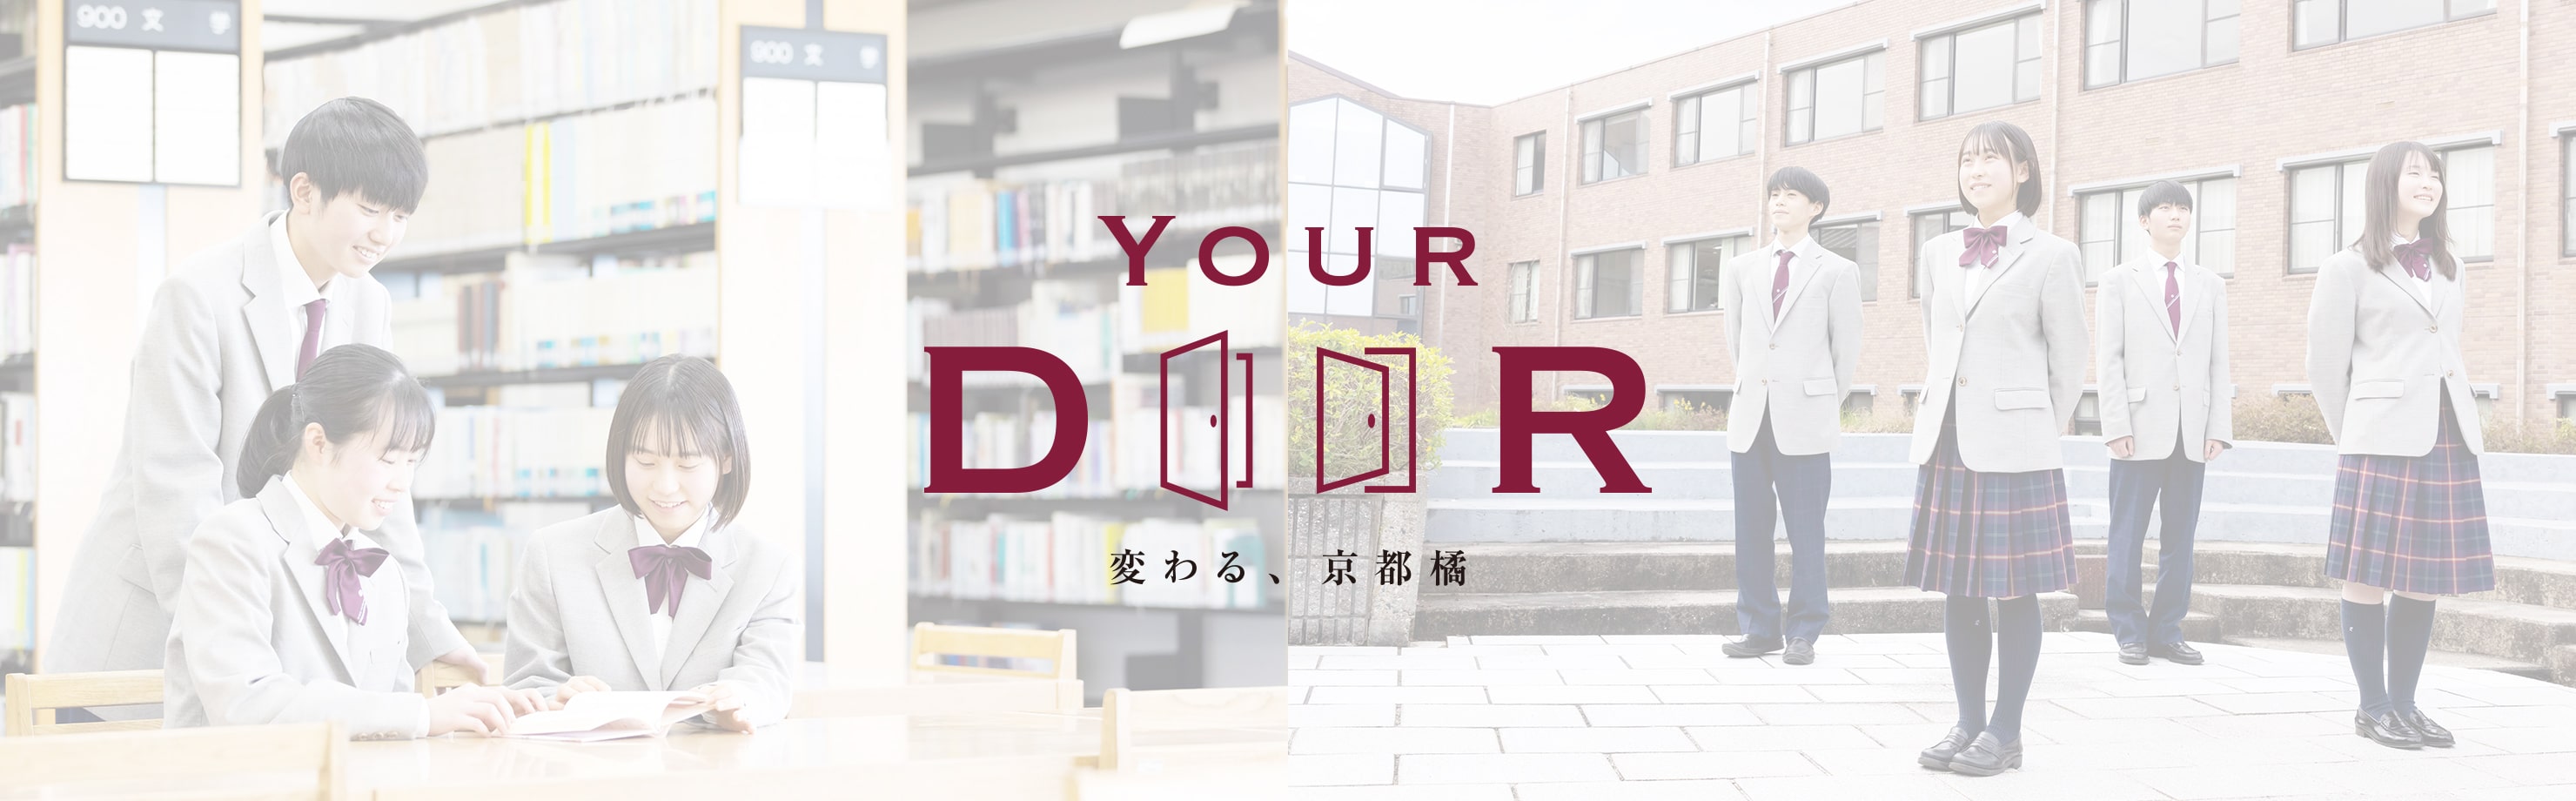 Your Door 変わる、京都橘